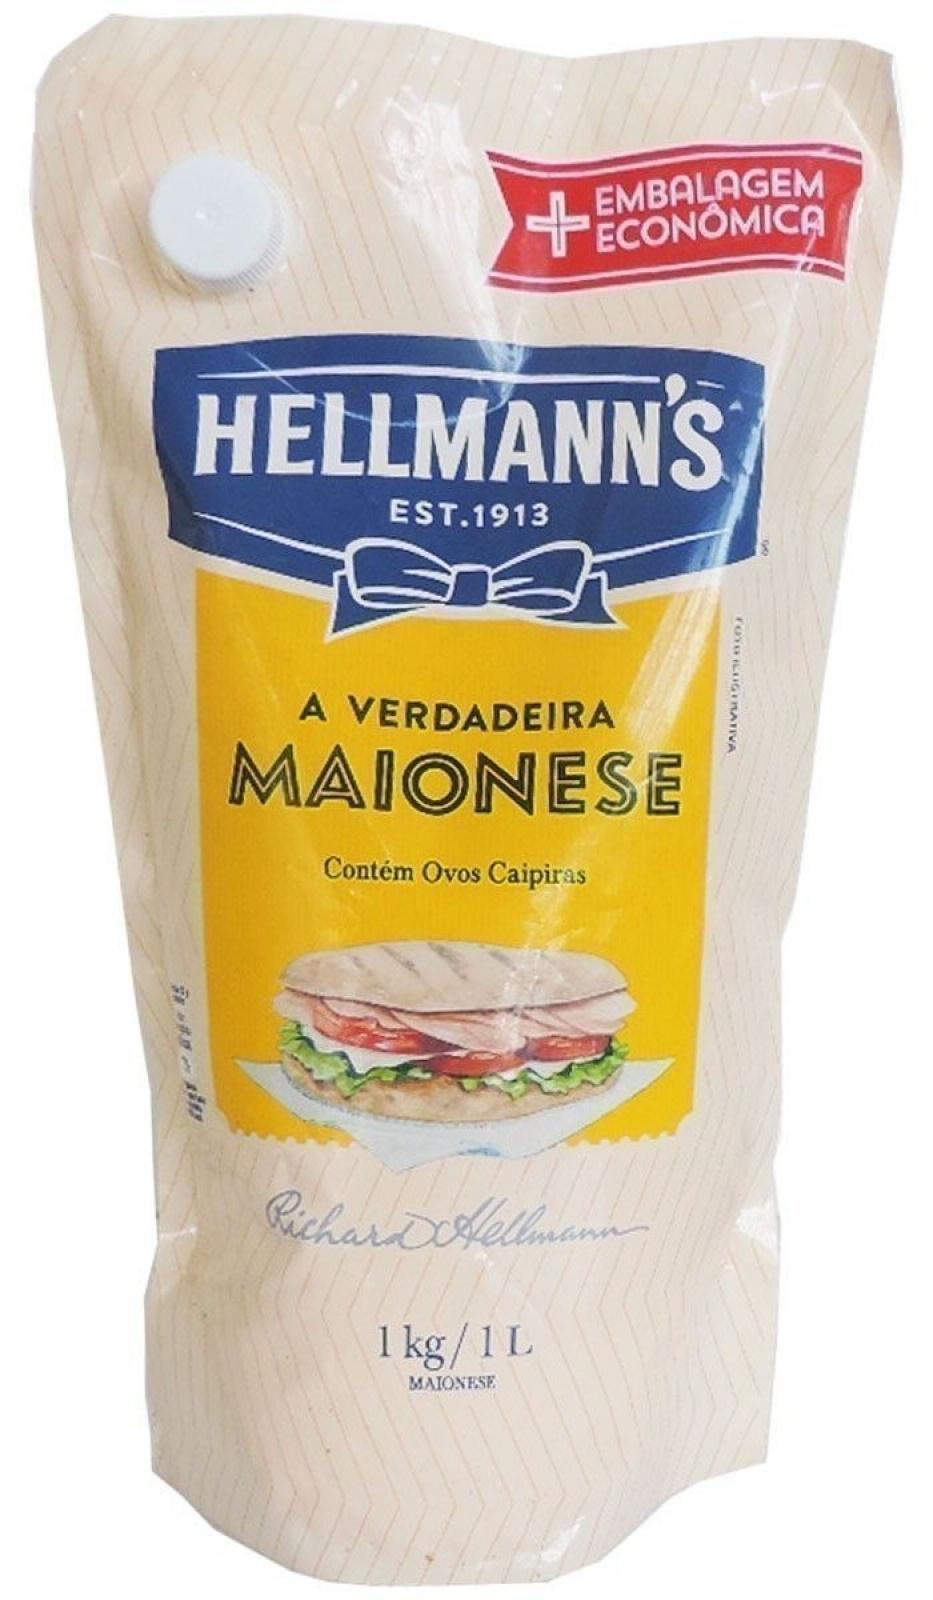 Hellmanns Maionese 1kg